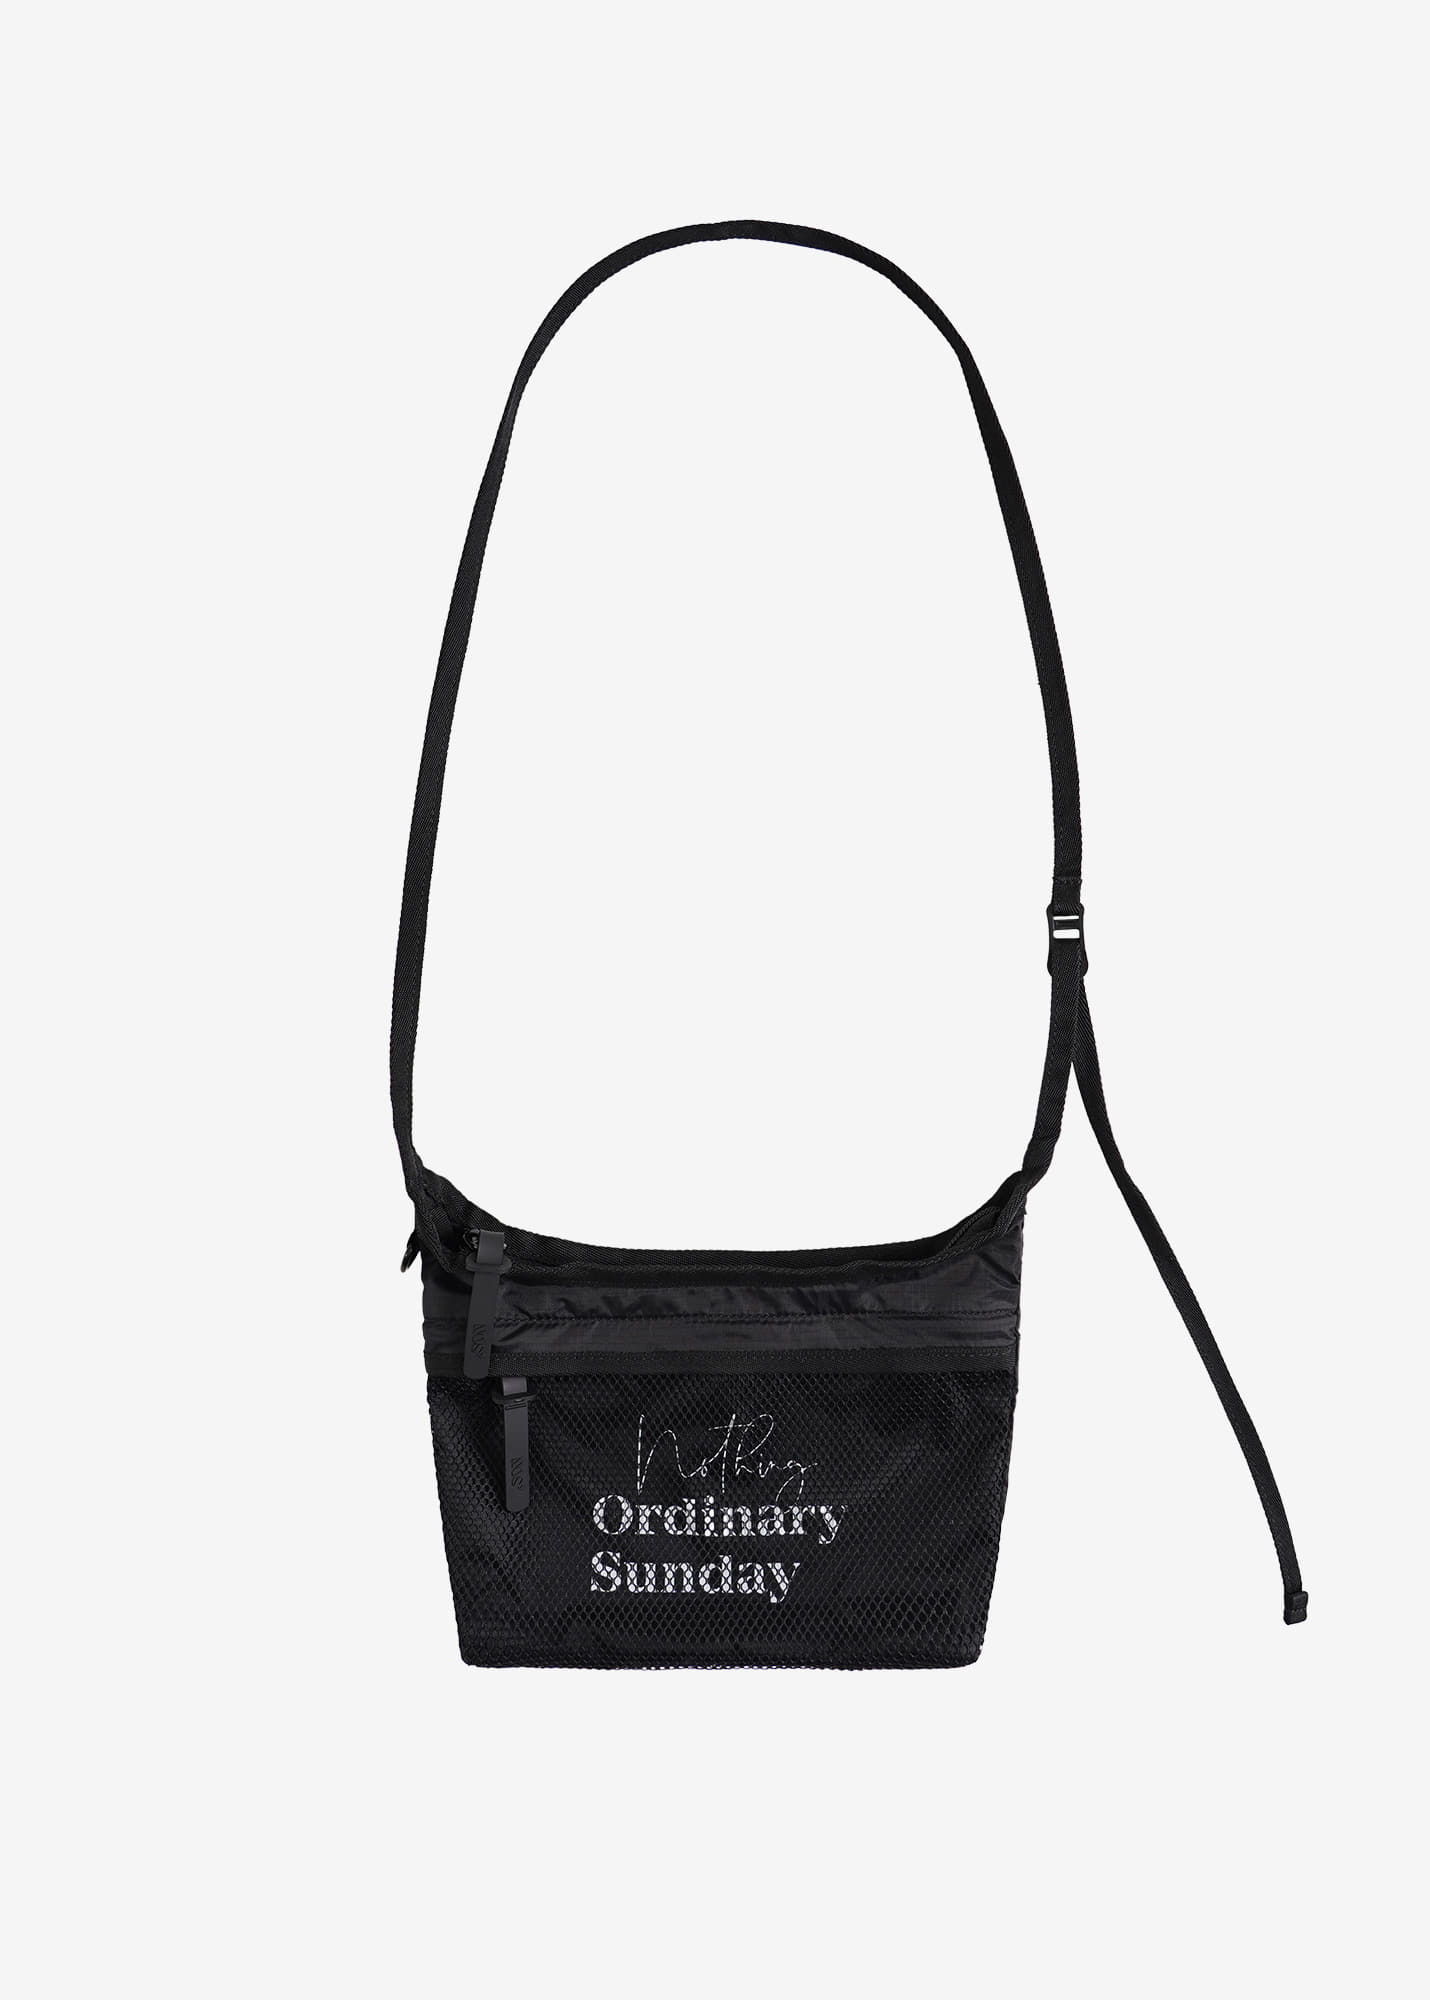 NOS7 Mini Shoulder Bag - Black